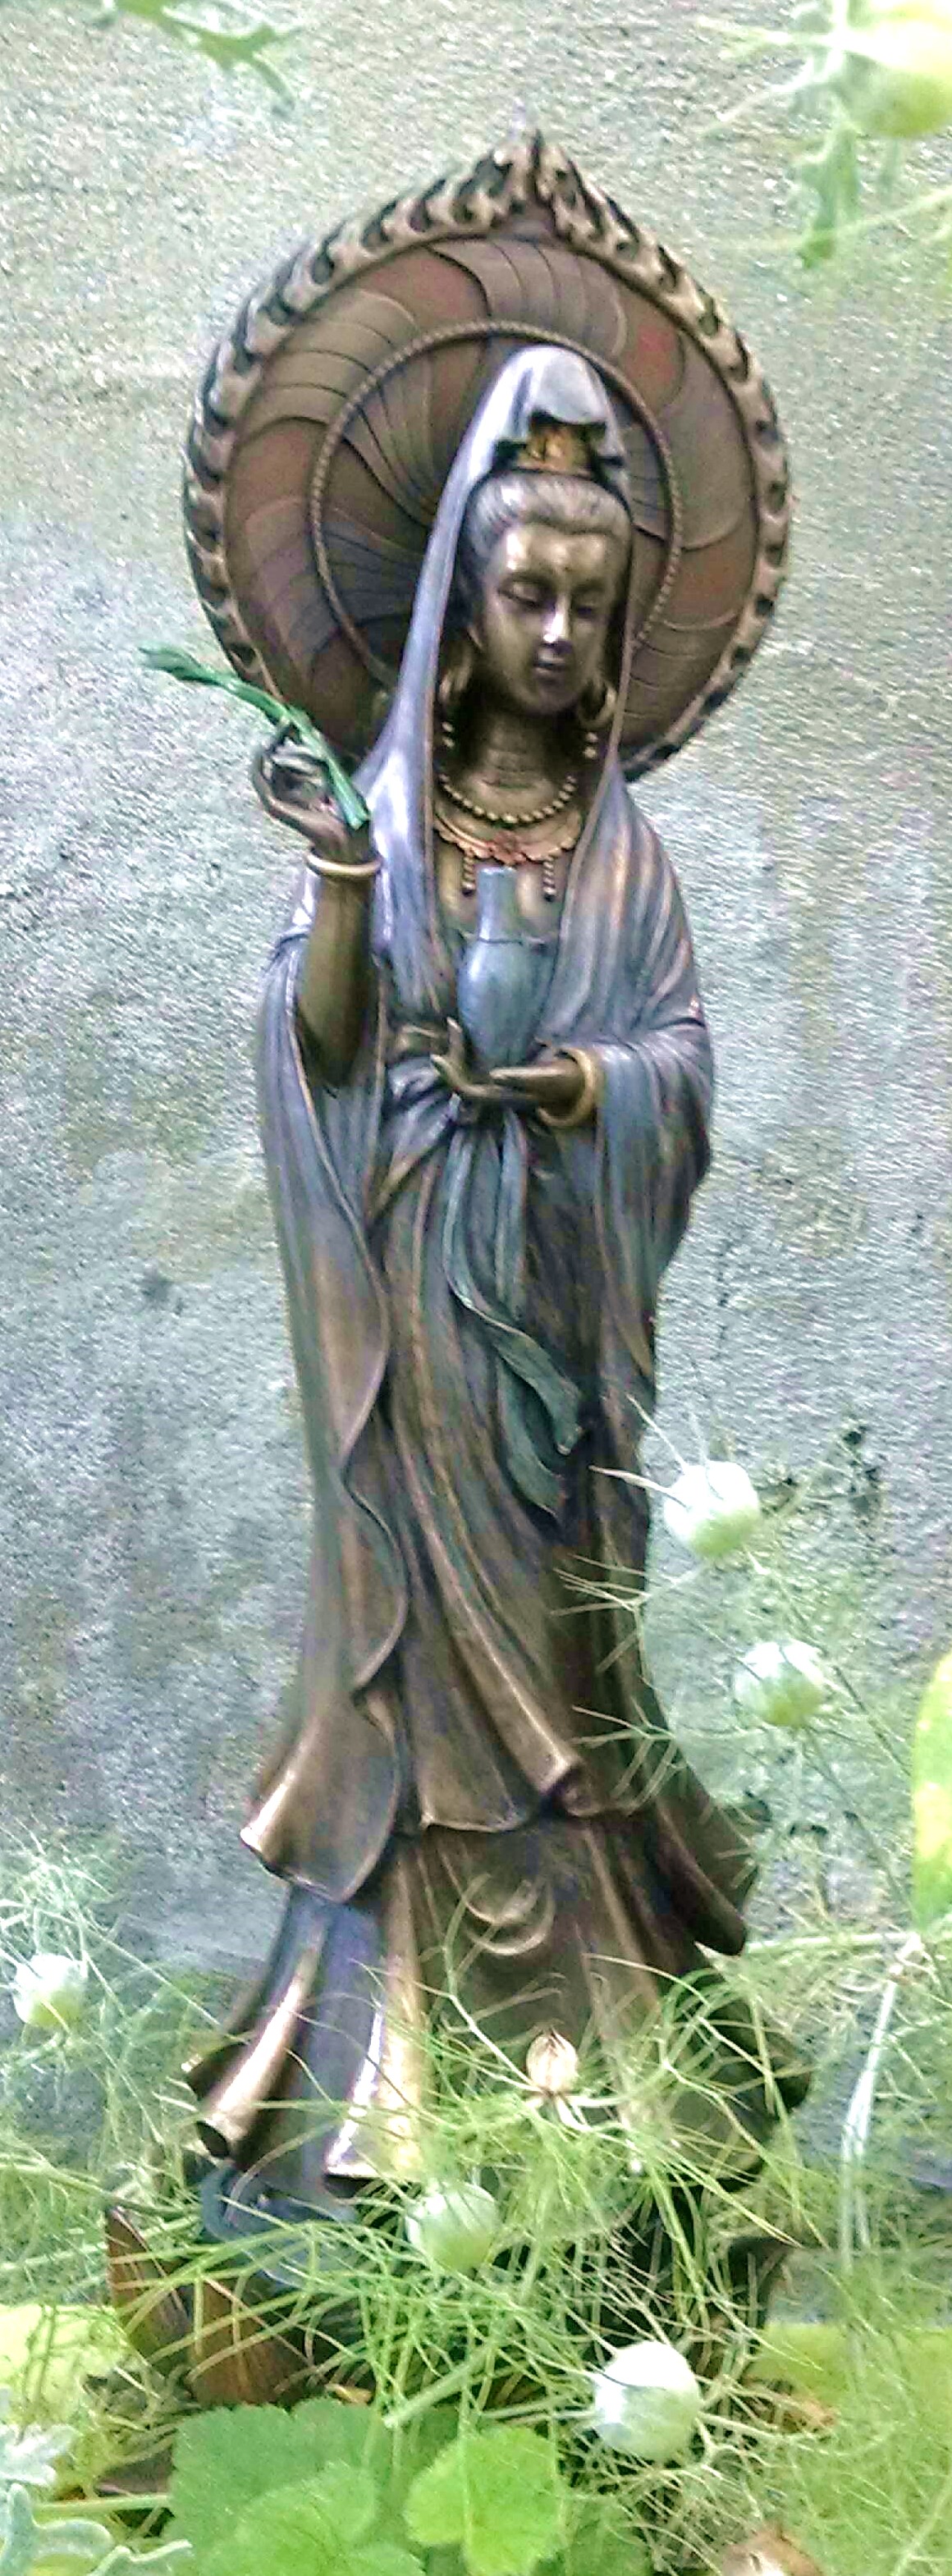 kwan yin statue